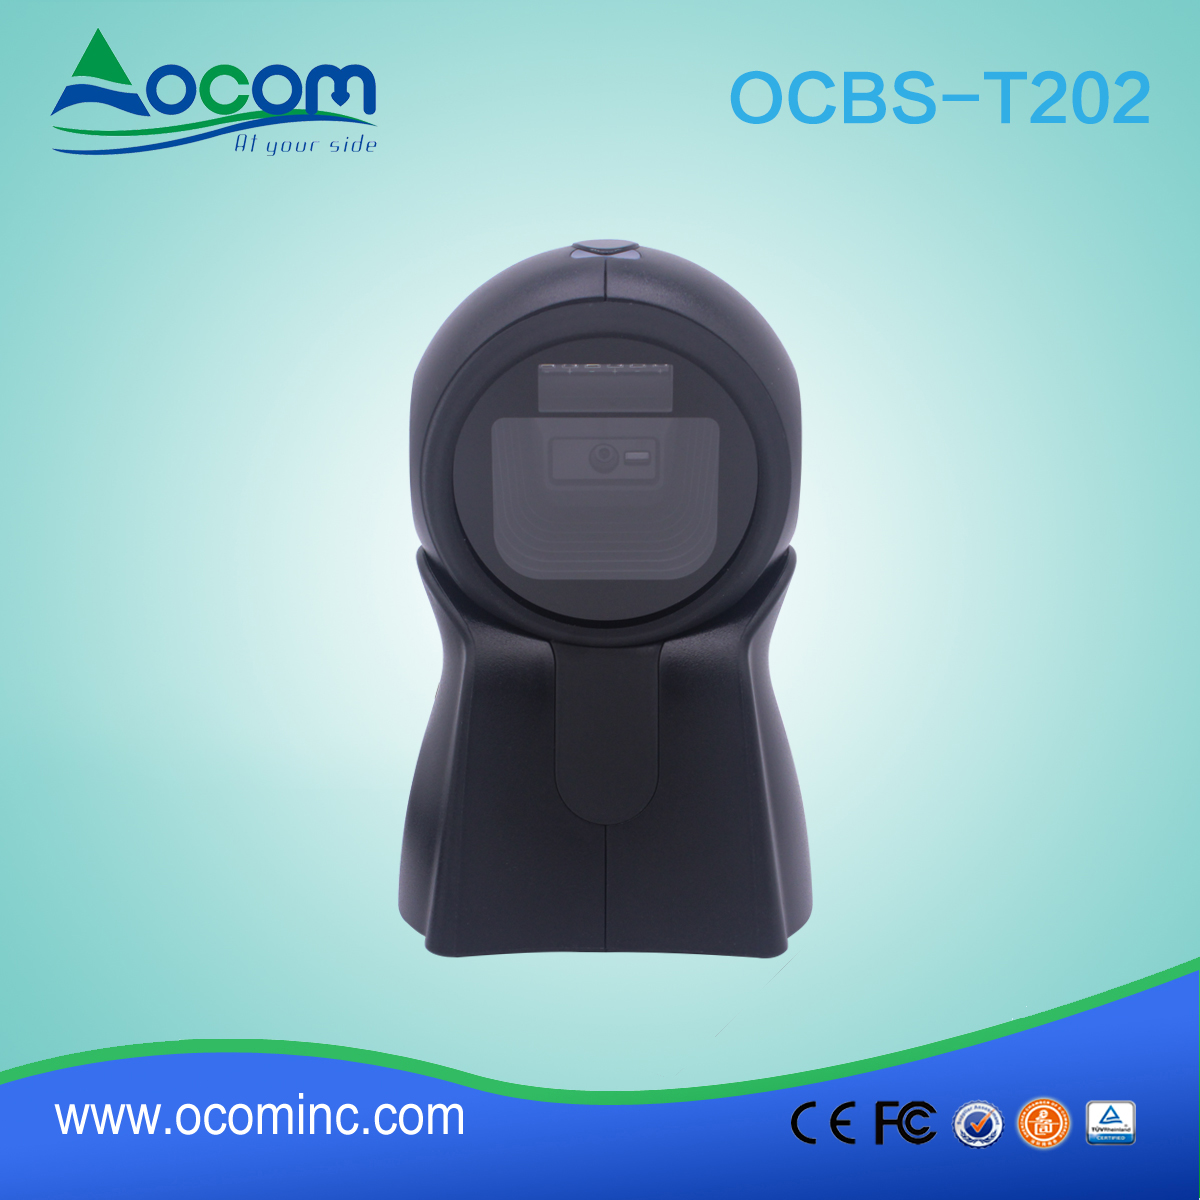 OCBS-T202 Εικόνα 2D QR Κωδικός Omni Κατευθυντικός σαρωτής γραμμωτού κώδικα